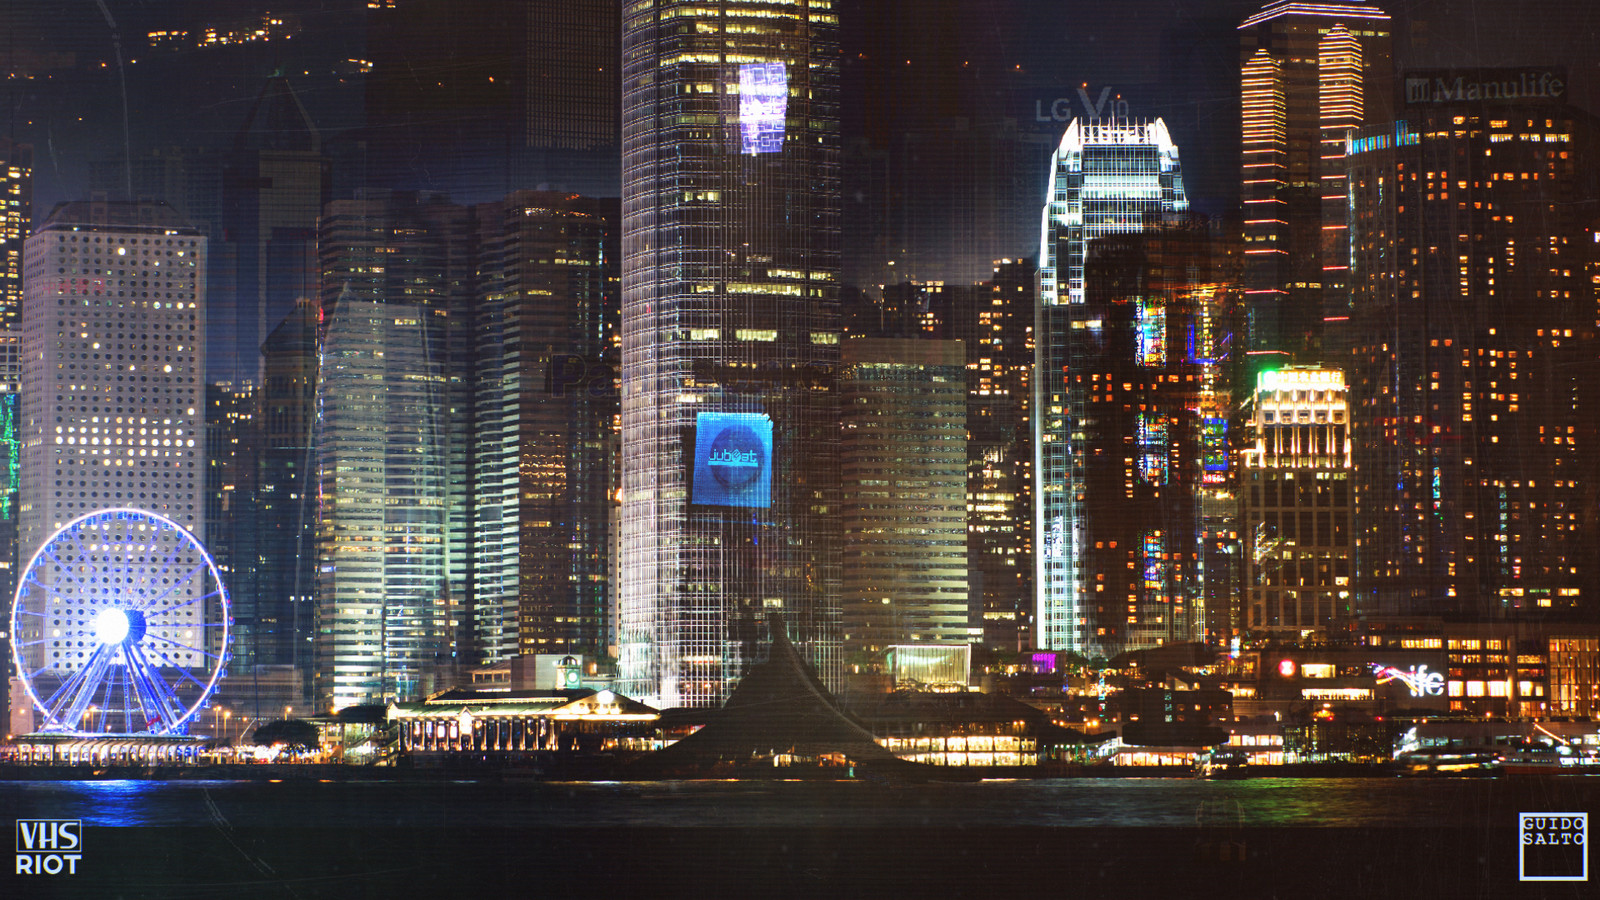 Quick Photobash of a Hong Kong Skyline at night